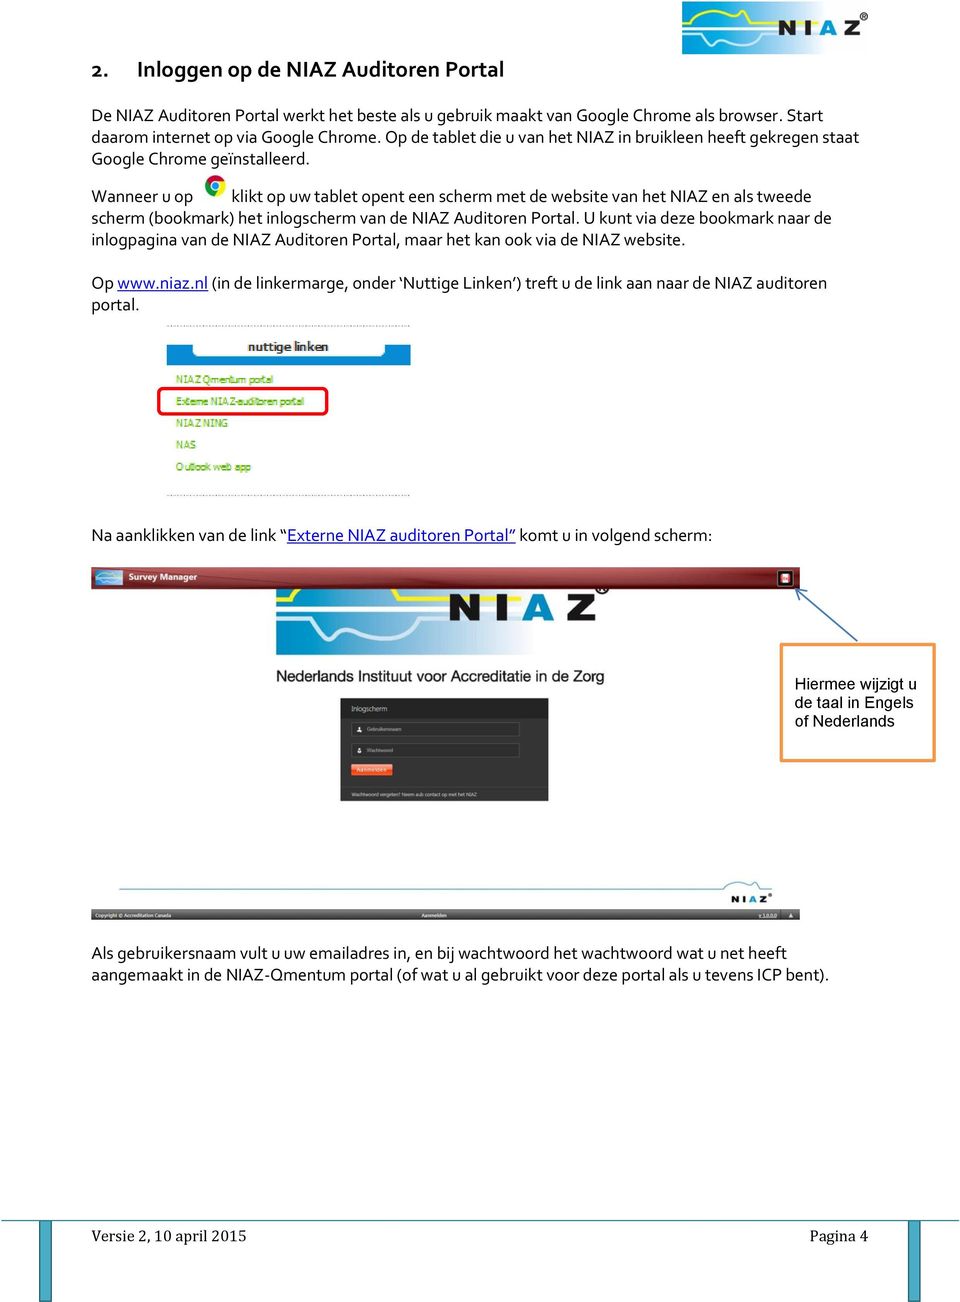 Wanneer u op klikt op uw tablet opent een scherm met de website van het NIAZ en als tweede scherm (bookmark) het inlogscherm van de NIAZ Auditoren Portal.